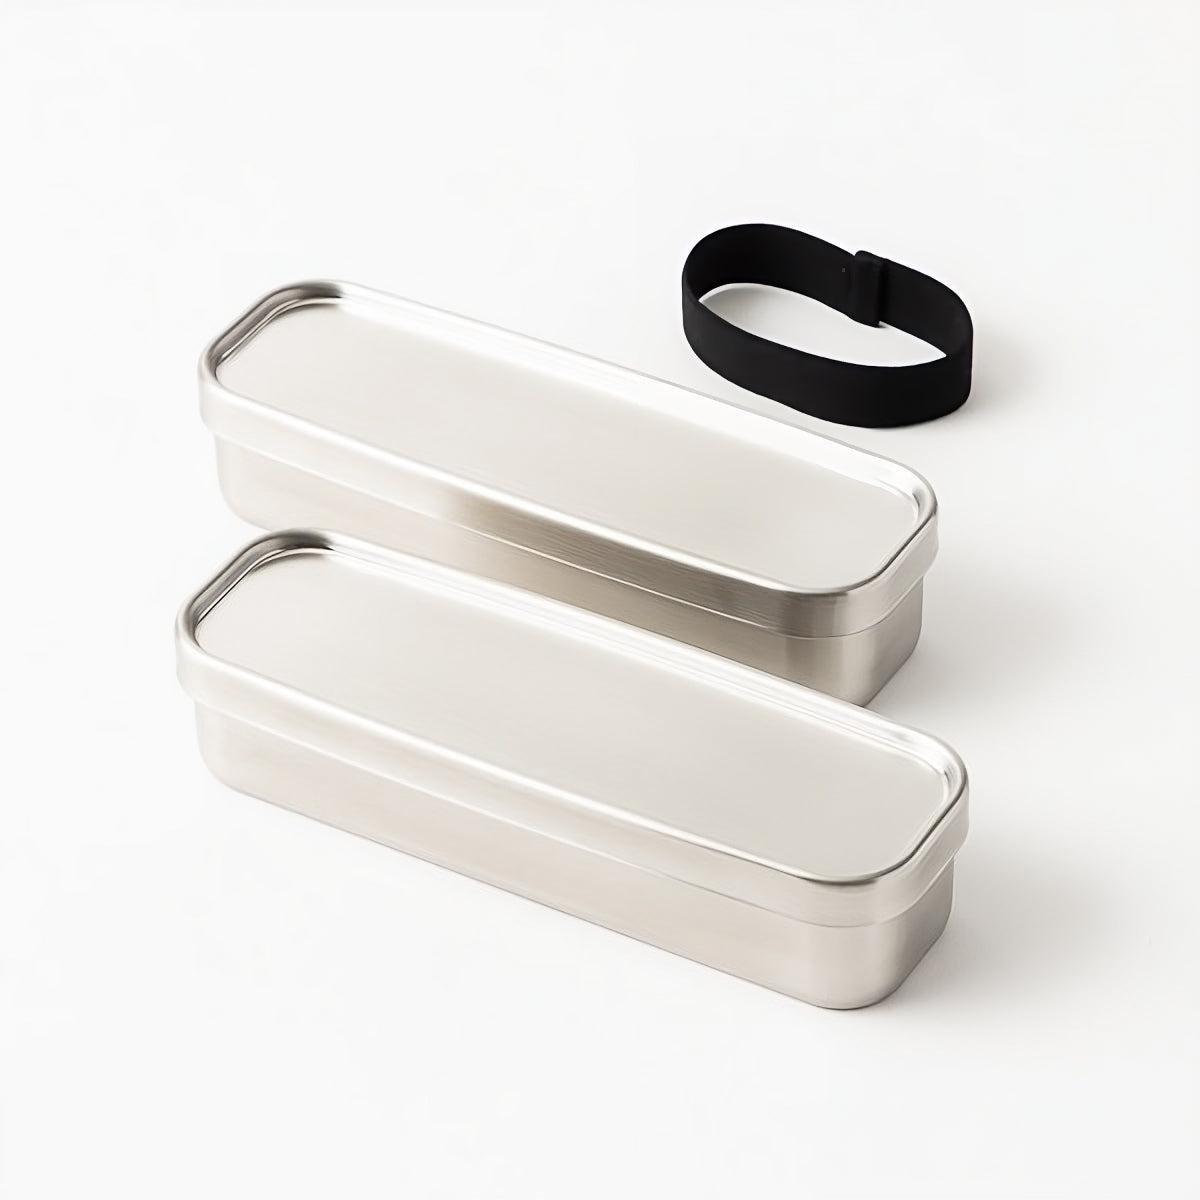 Aizawa Rectangular Slim Two-Tier Lunch Box Stainless Steel Bento Box 700ml